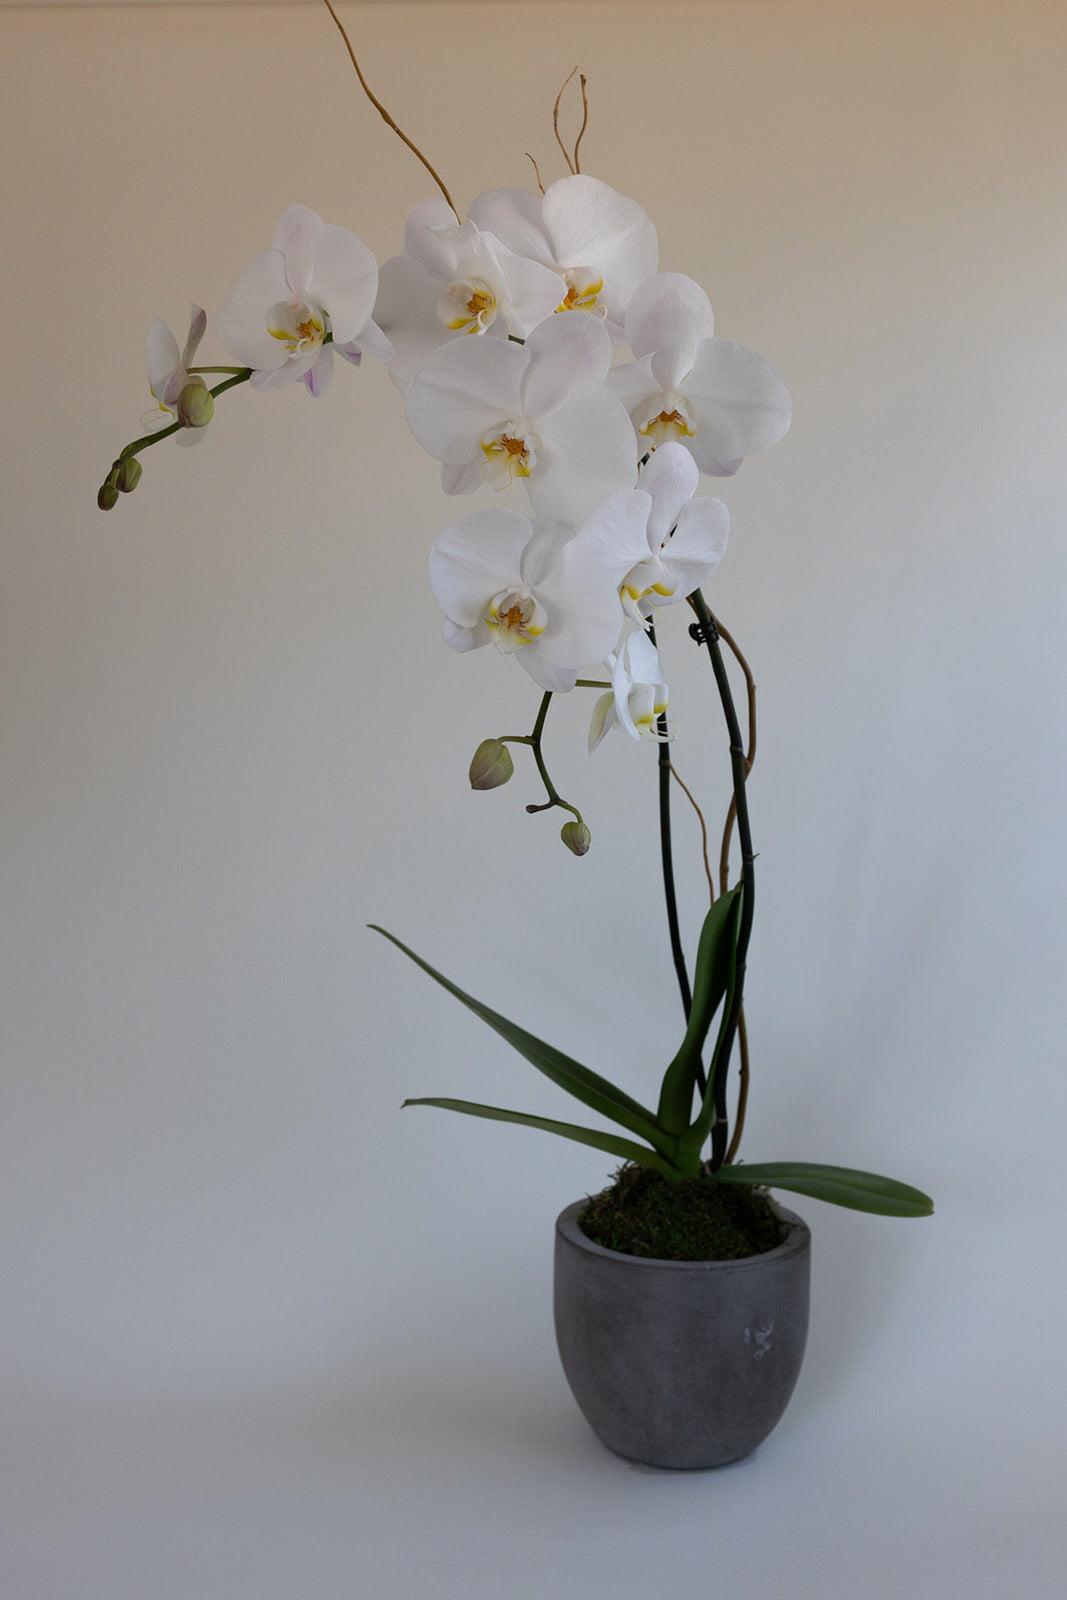 Double Stem Orchid